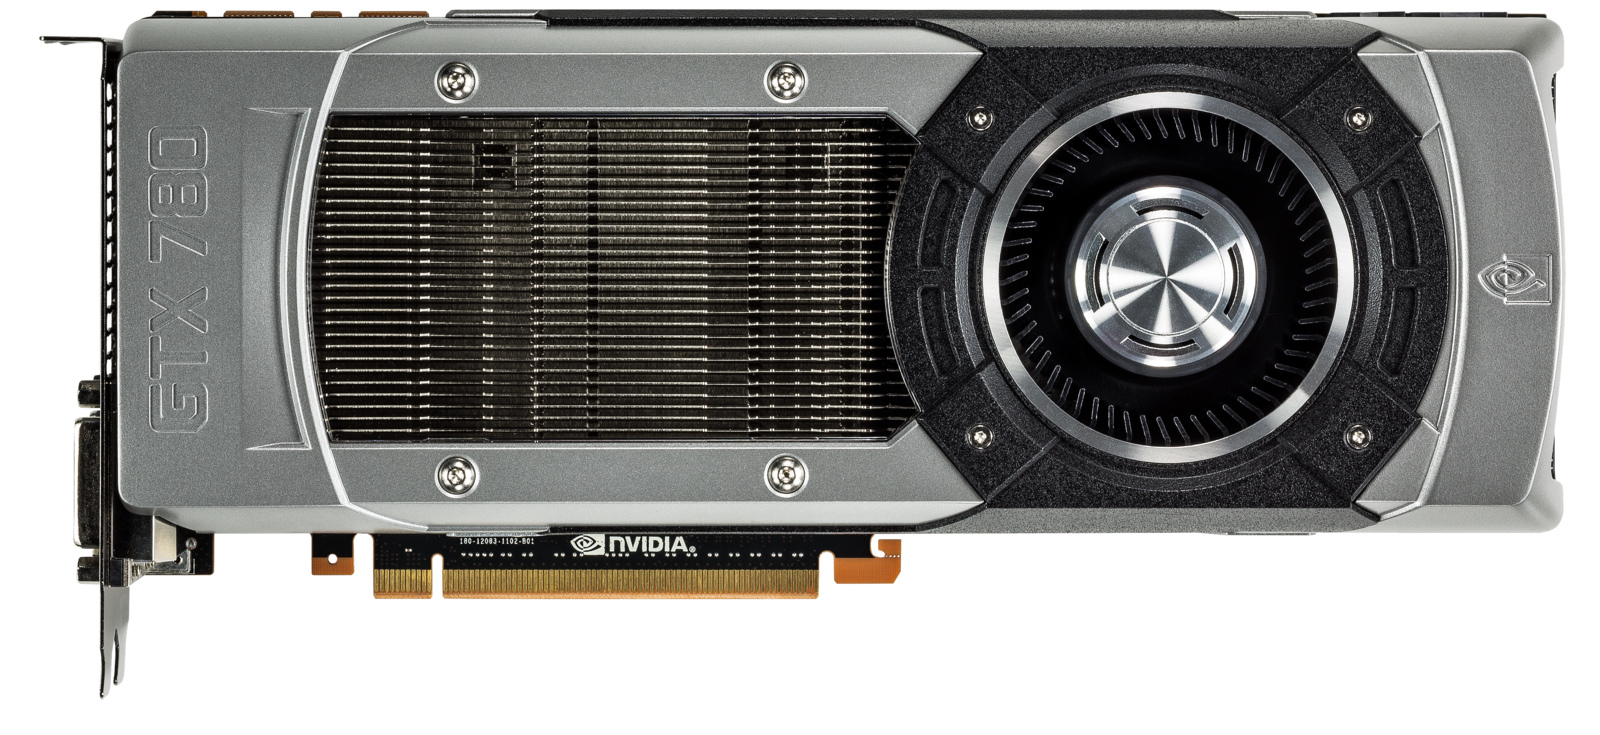 Immagine pubblicata in relazione al seguente contenuto: NVIDIA annuncia la video card high-end GeForce GTX 780 | Nome immagine: news19574_NVIDIA-GeForce-GTX-780_3.jpg